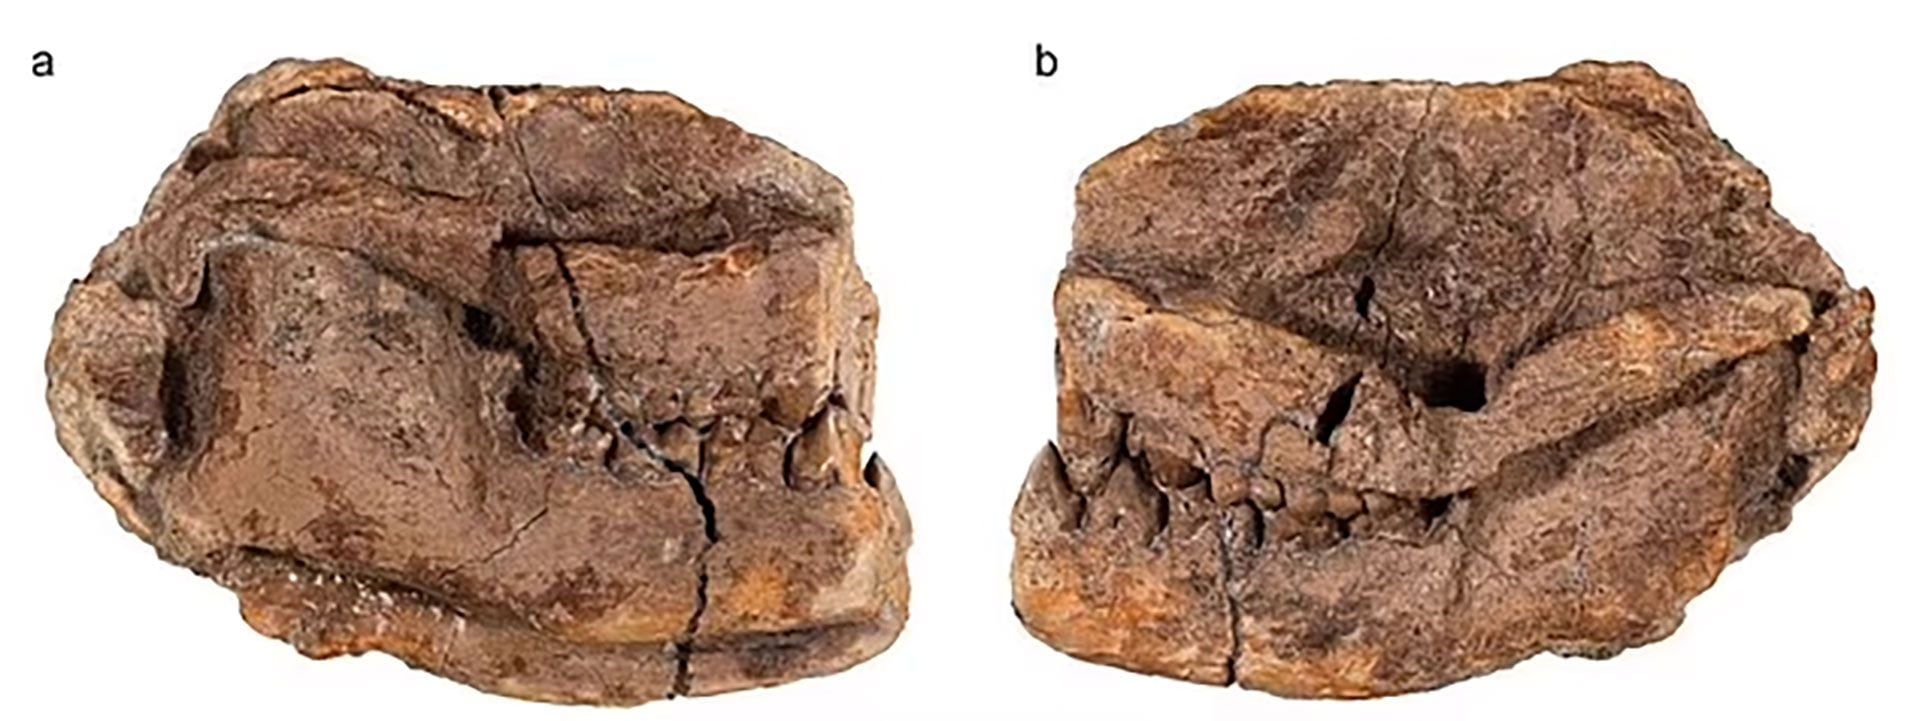 Se estima que el Militocodon lydae apareció unos 600.000 años después de la extinción masiva (Denver Museum of Nature & Science)